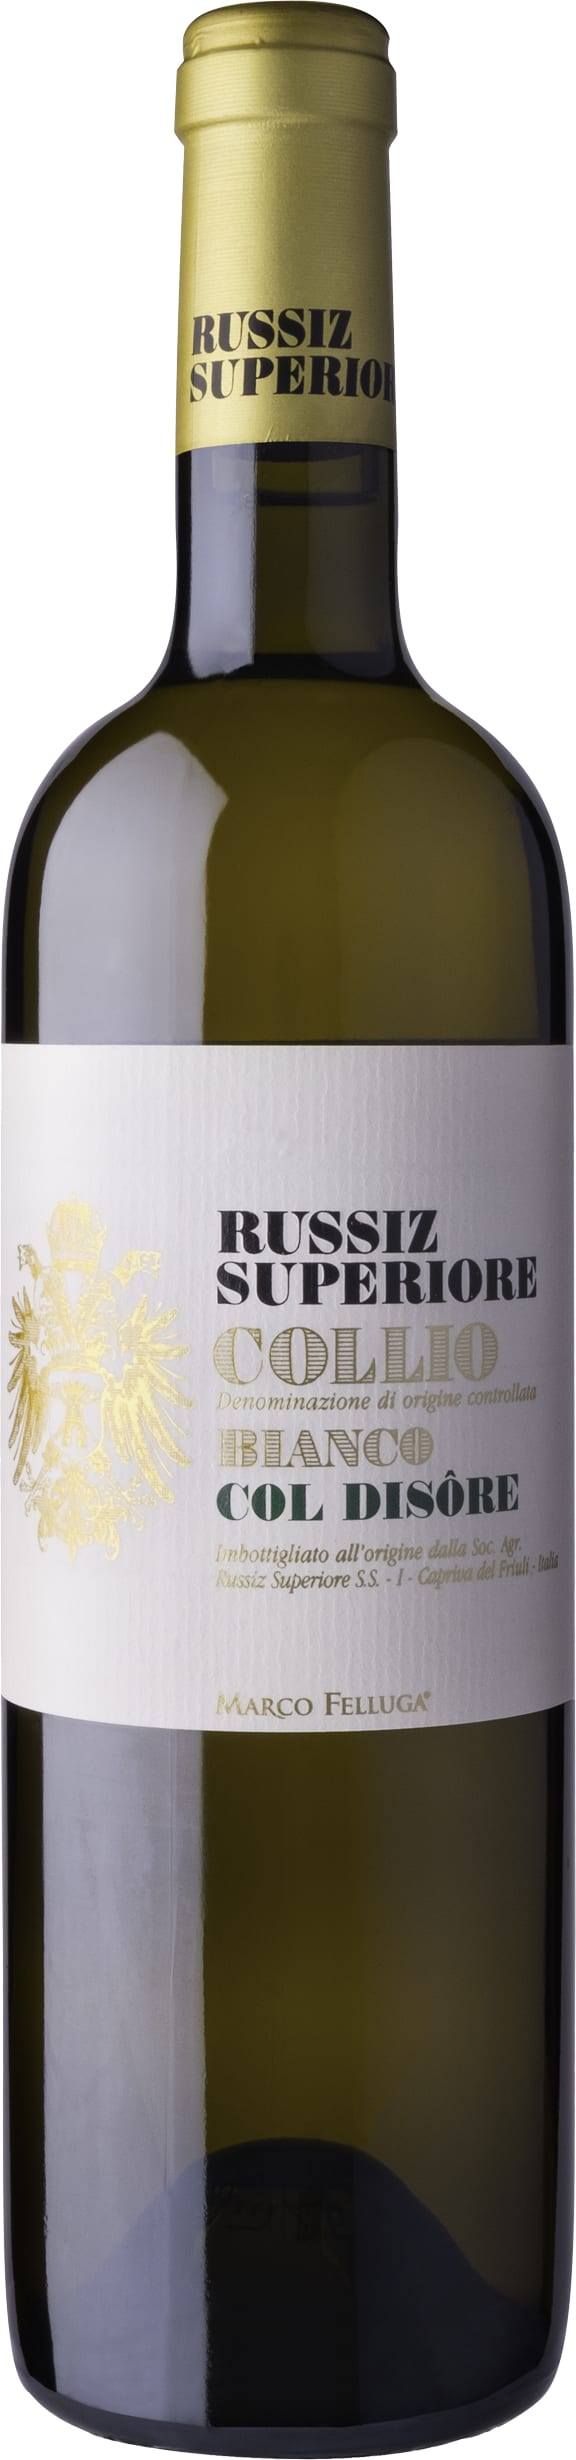 Russiz Superiore Bianco Col Disore, Collio 2017 75cl - Buy Russiz Superiore Wines from GREAT WINES DIRECT wine shop